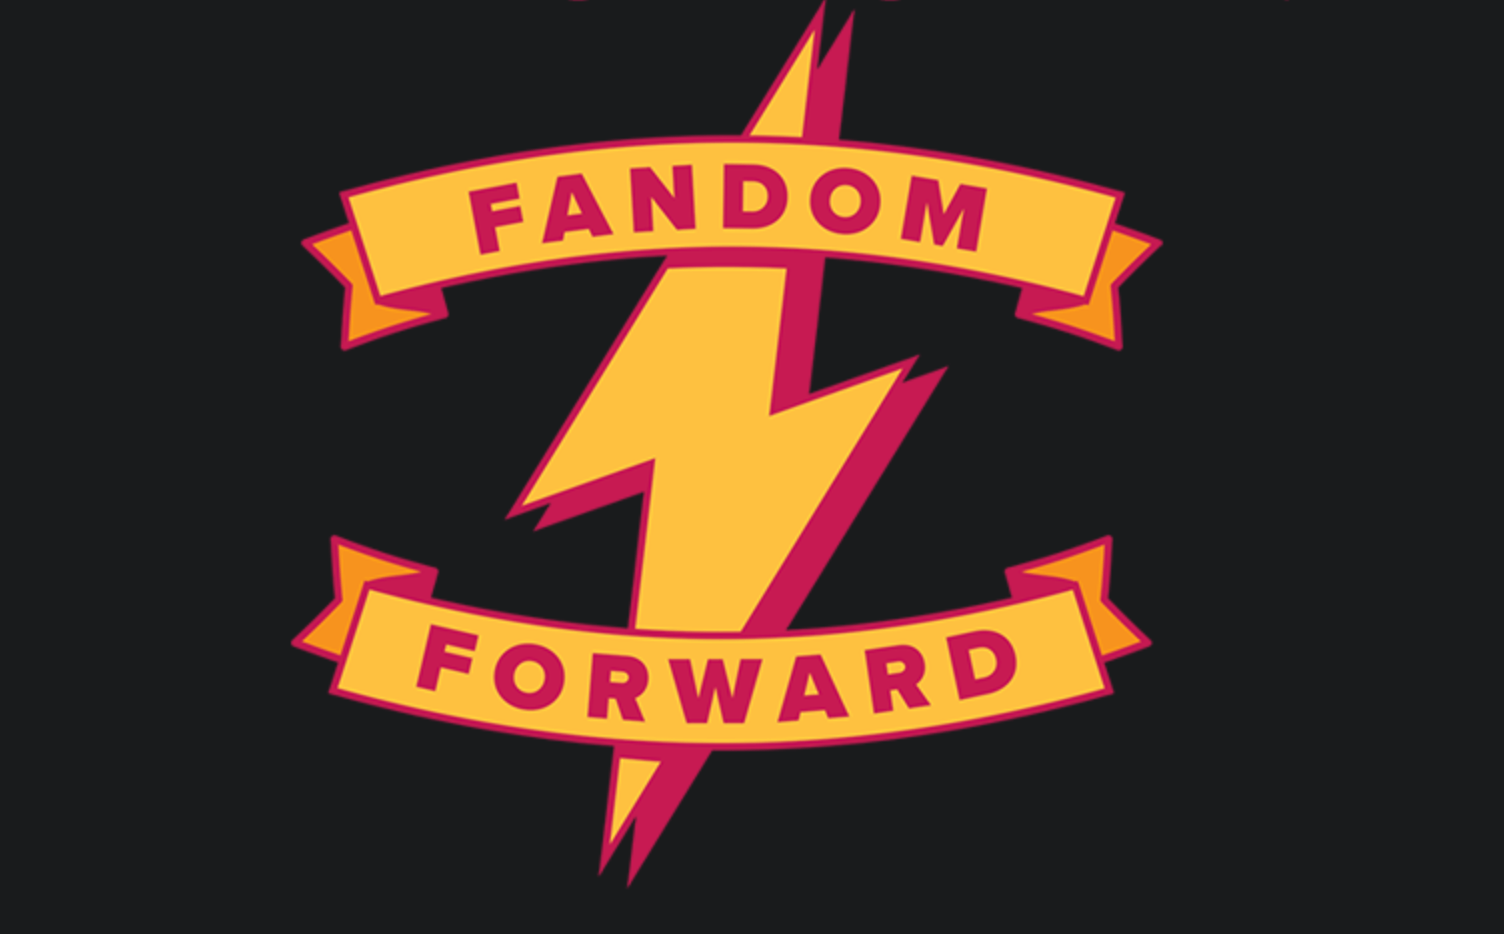 logos loyalty hogwarts legacy